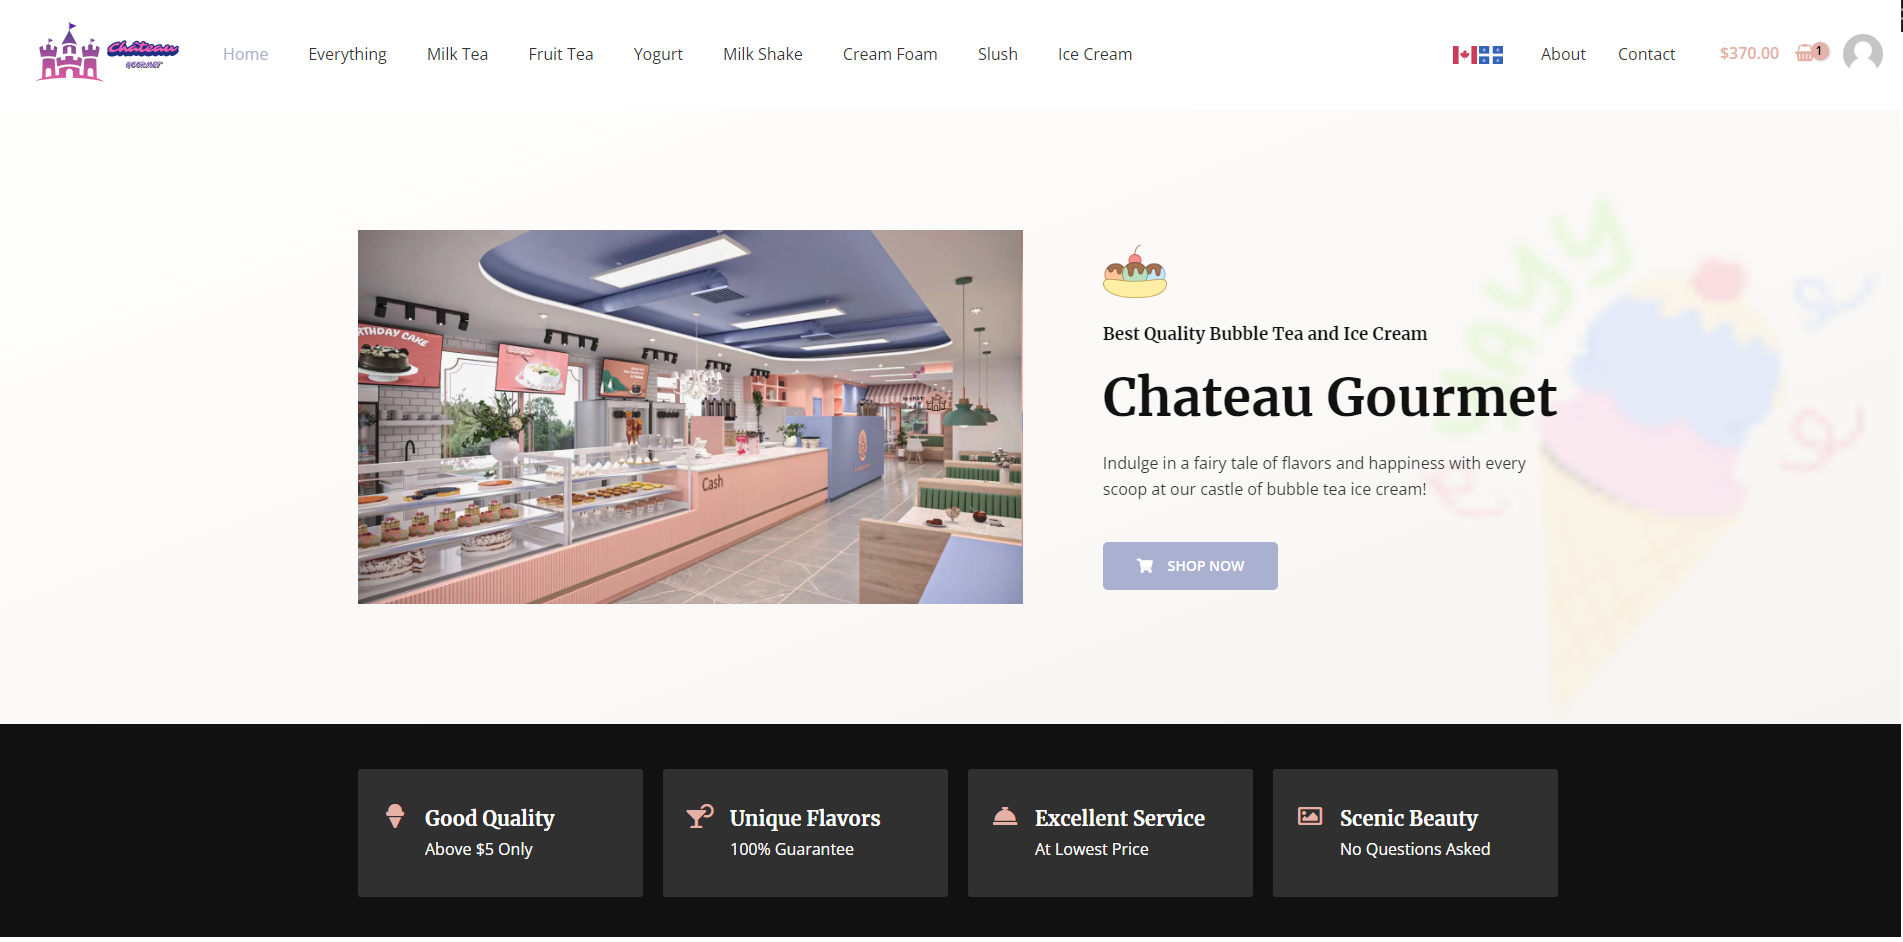 www.chateau-gourmet.com_short